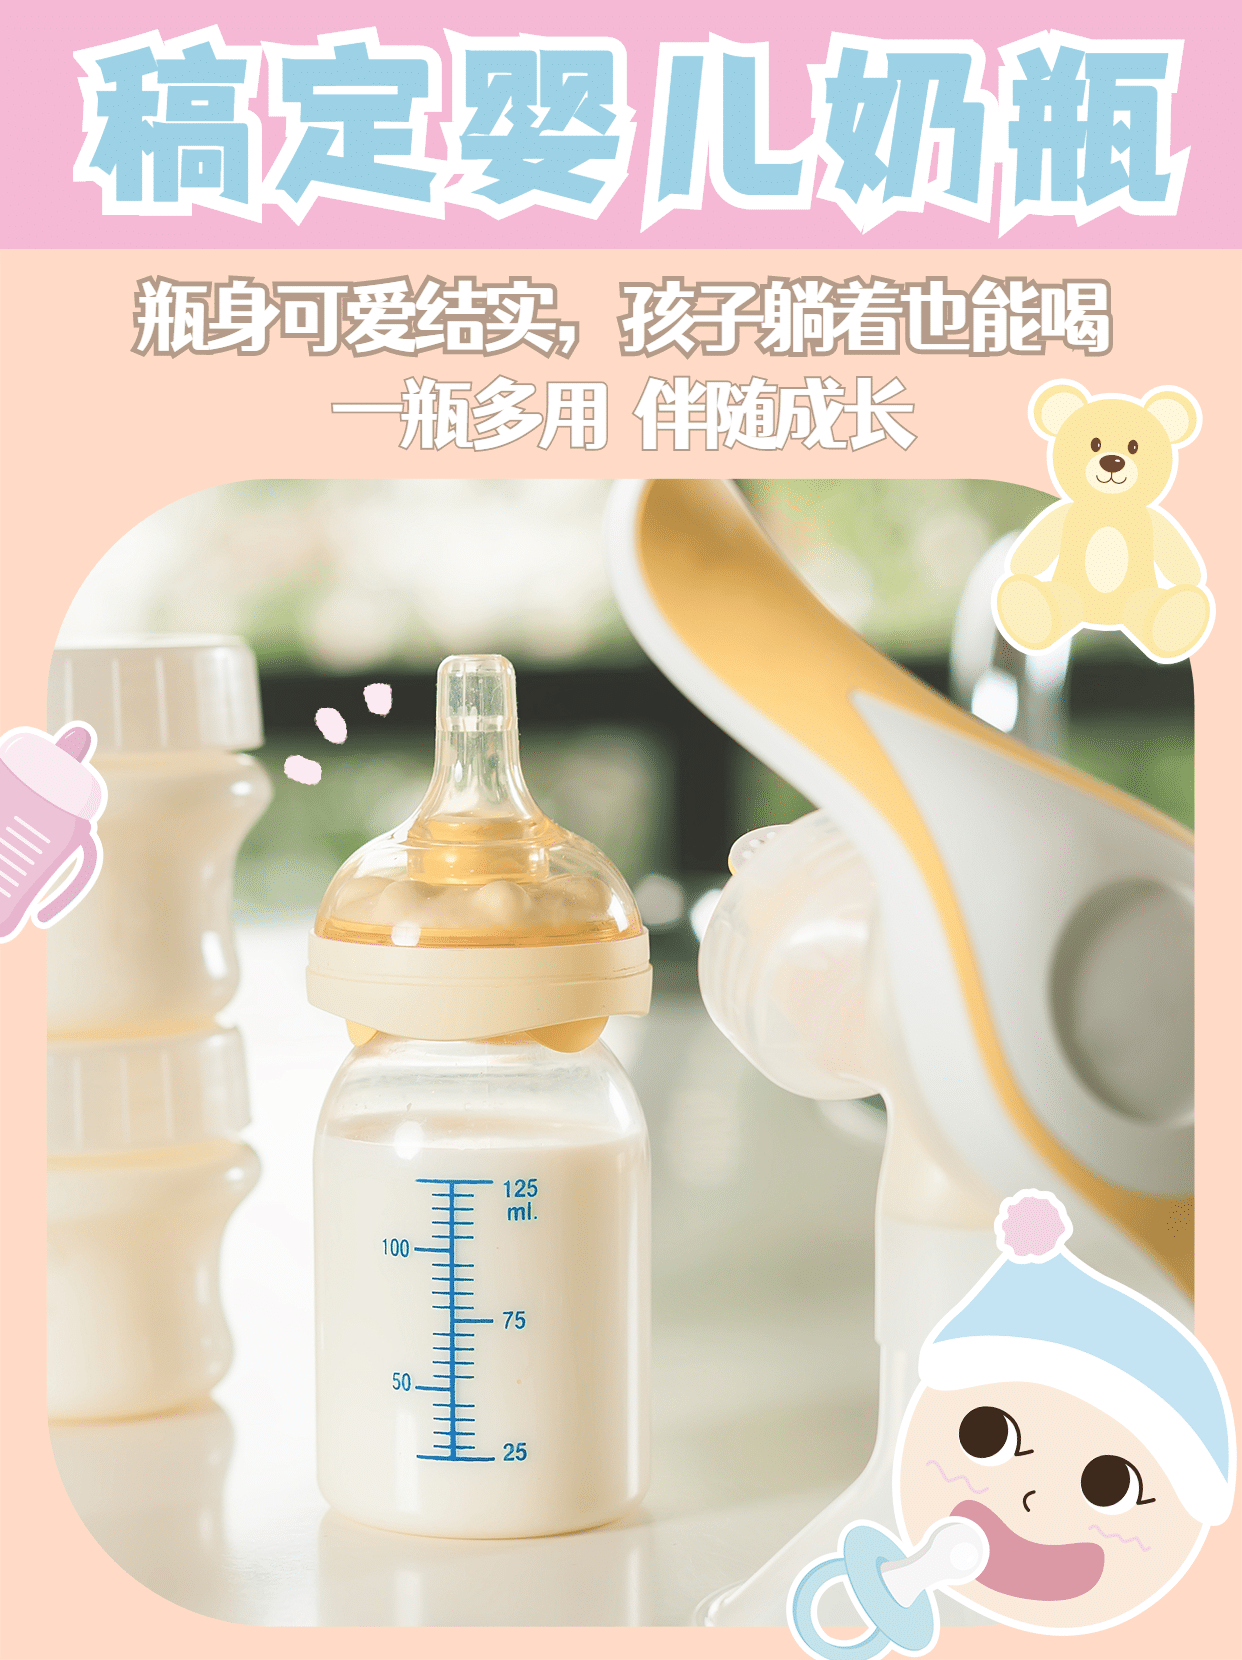 小红书种草母婴亲子产品展示奶瓶预览效果